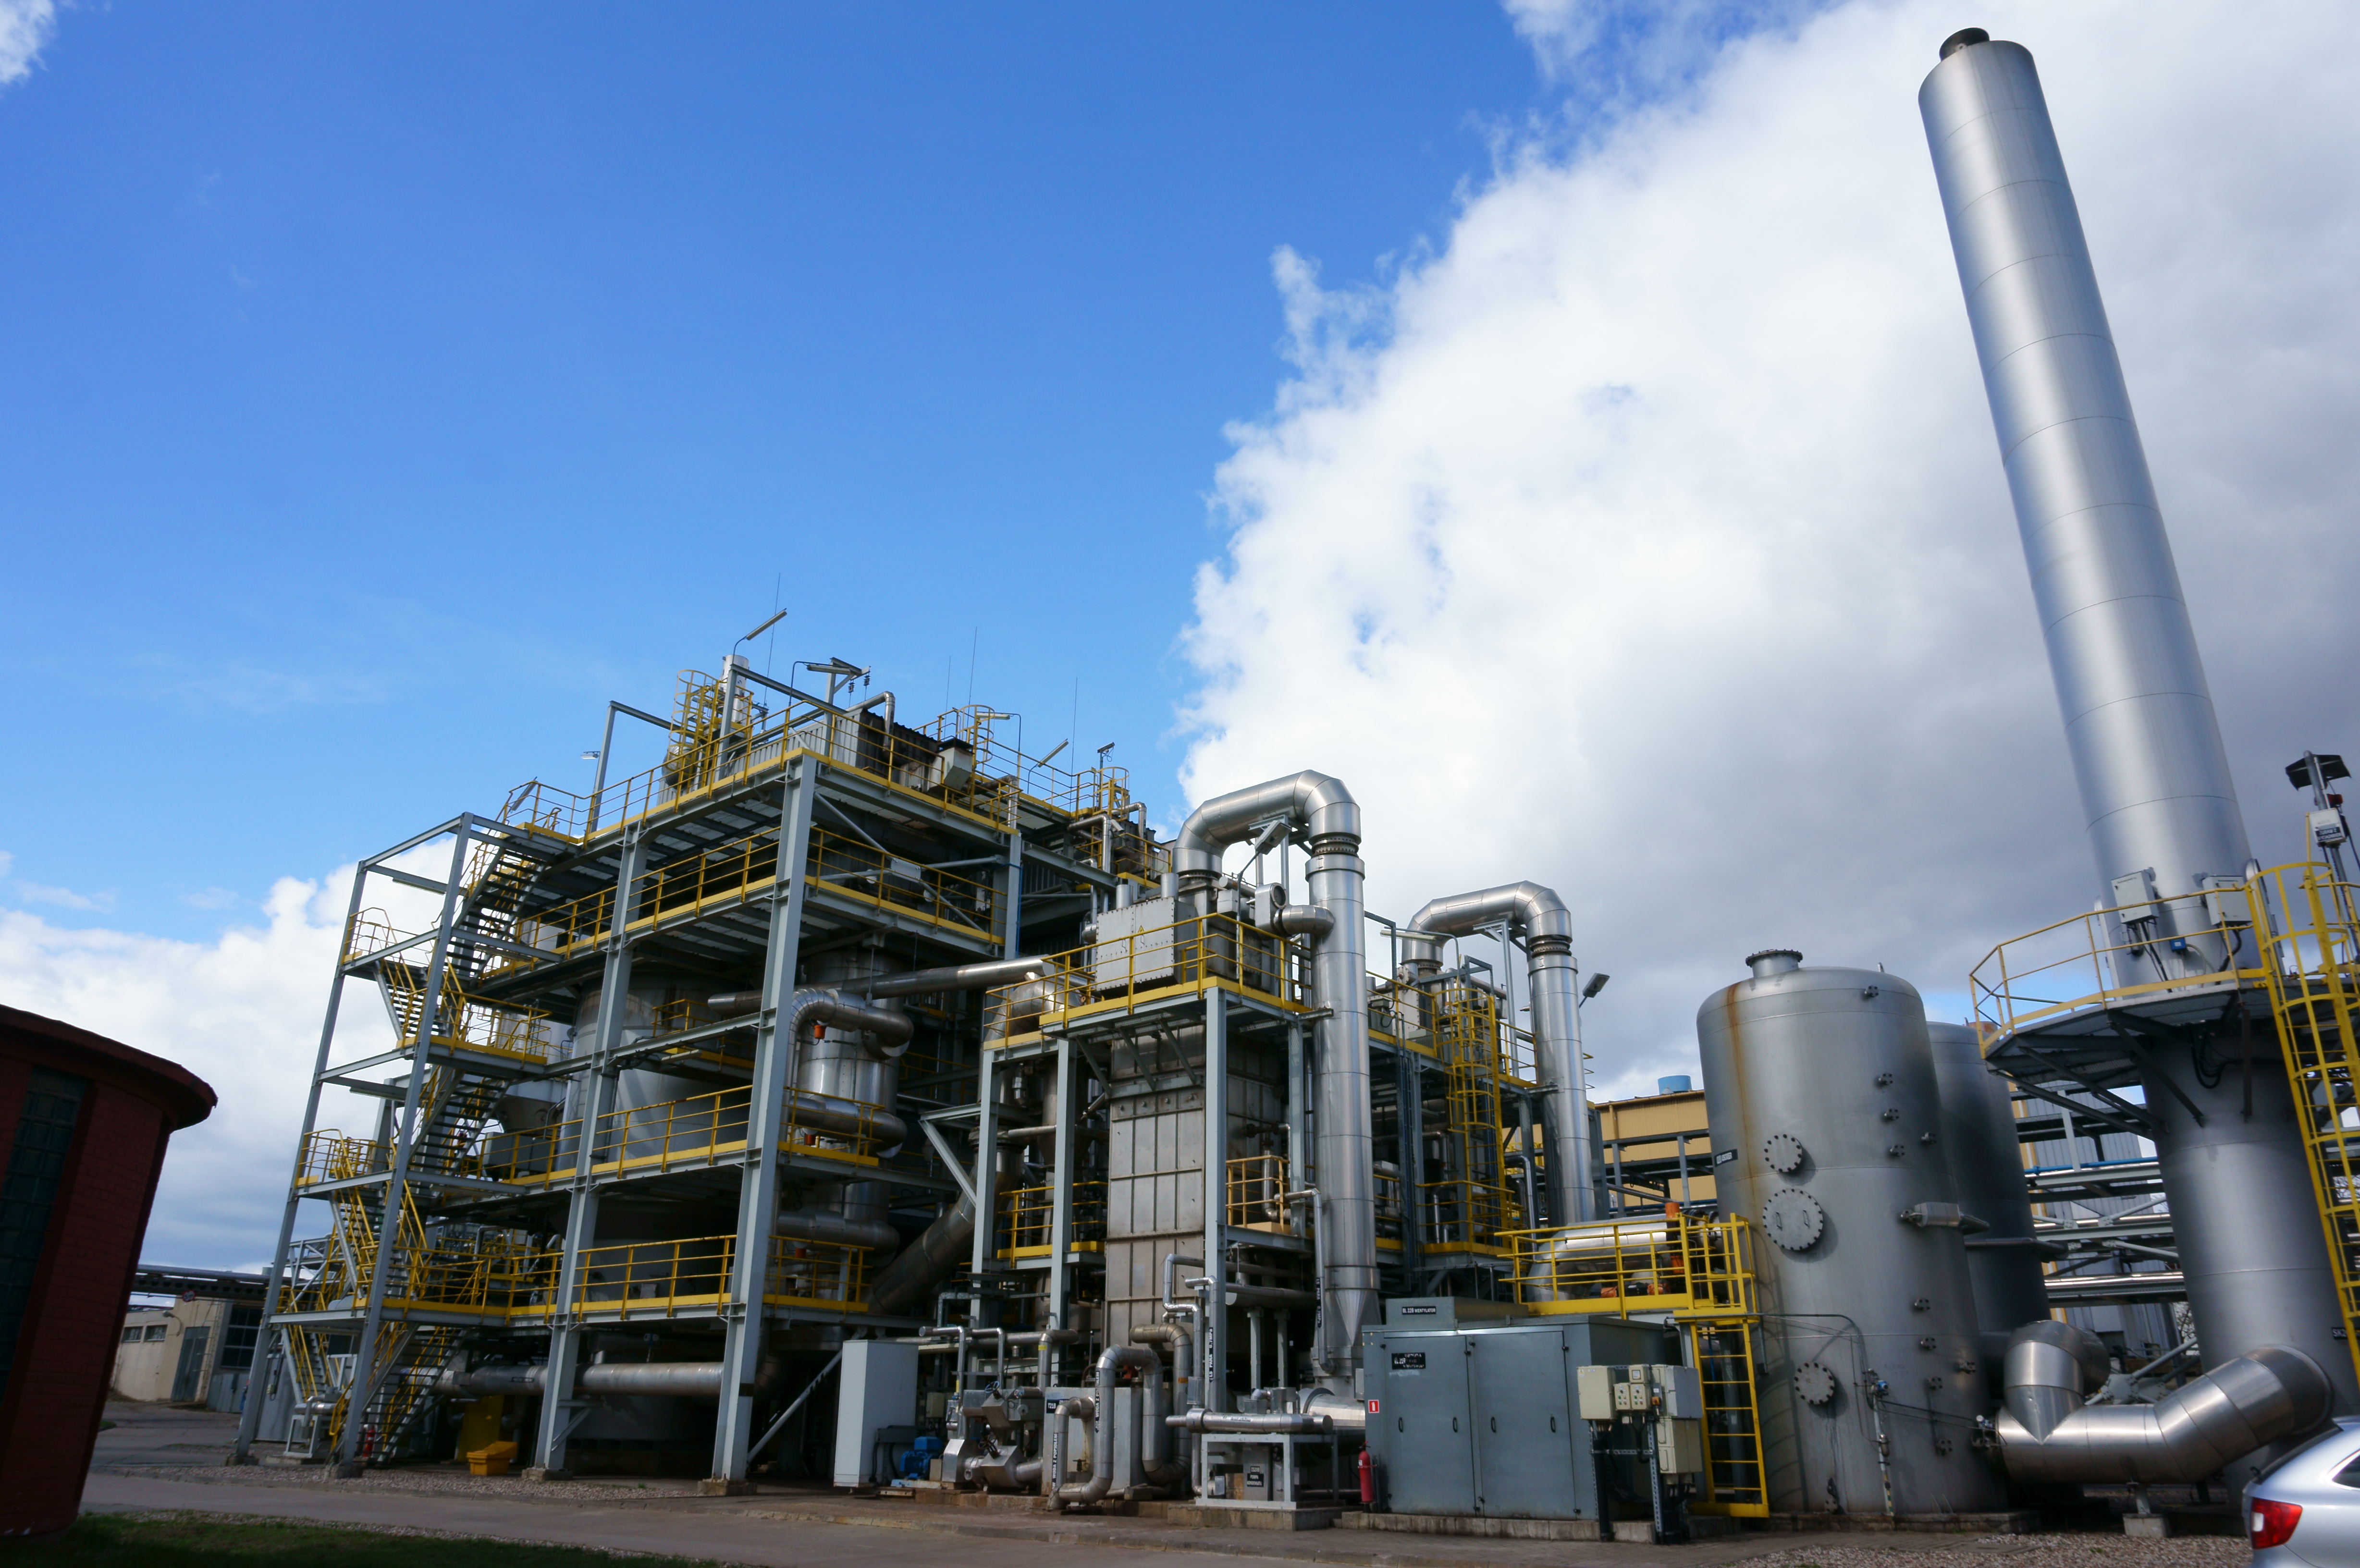 ORLEN Eko, spółka GK PKN ORLEN, uruchomiła w 2008 roku Instalację Termicznego Przekształcania Odpadów, która umożliwia unieszkodliwianie 10 tys. ton rocznie (nominalnie ma możliwość 50 tys. ton) wysuszonych osadów ściekowych pochodzących m.in. z procesów przerobu ropy naftowej i oczyszczania ścieków. Instalacja składa się z systemu przygotowania i transportu odpadów, dwóch linii spalania, odrębnych dla każdego pieca systemów odzysku ciepła i oczyszczania spalin